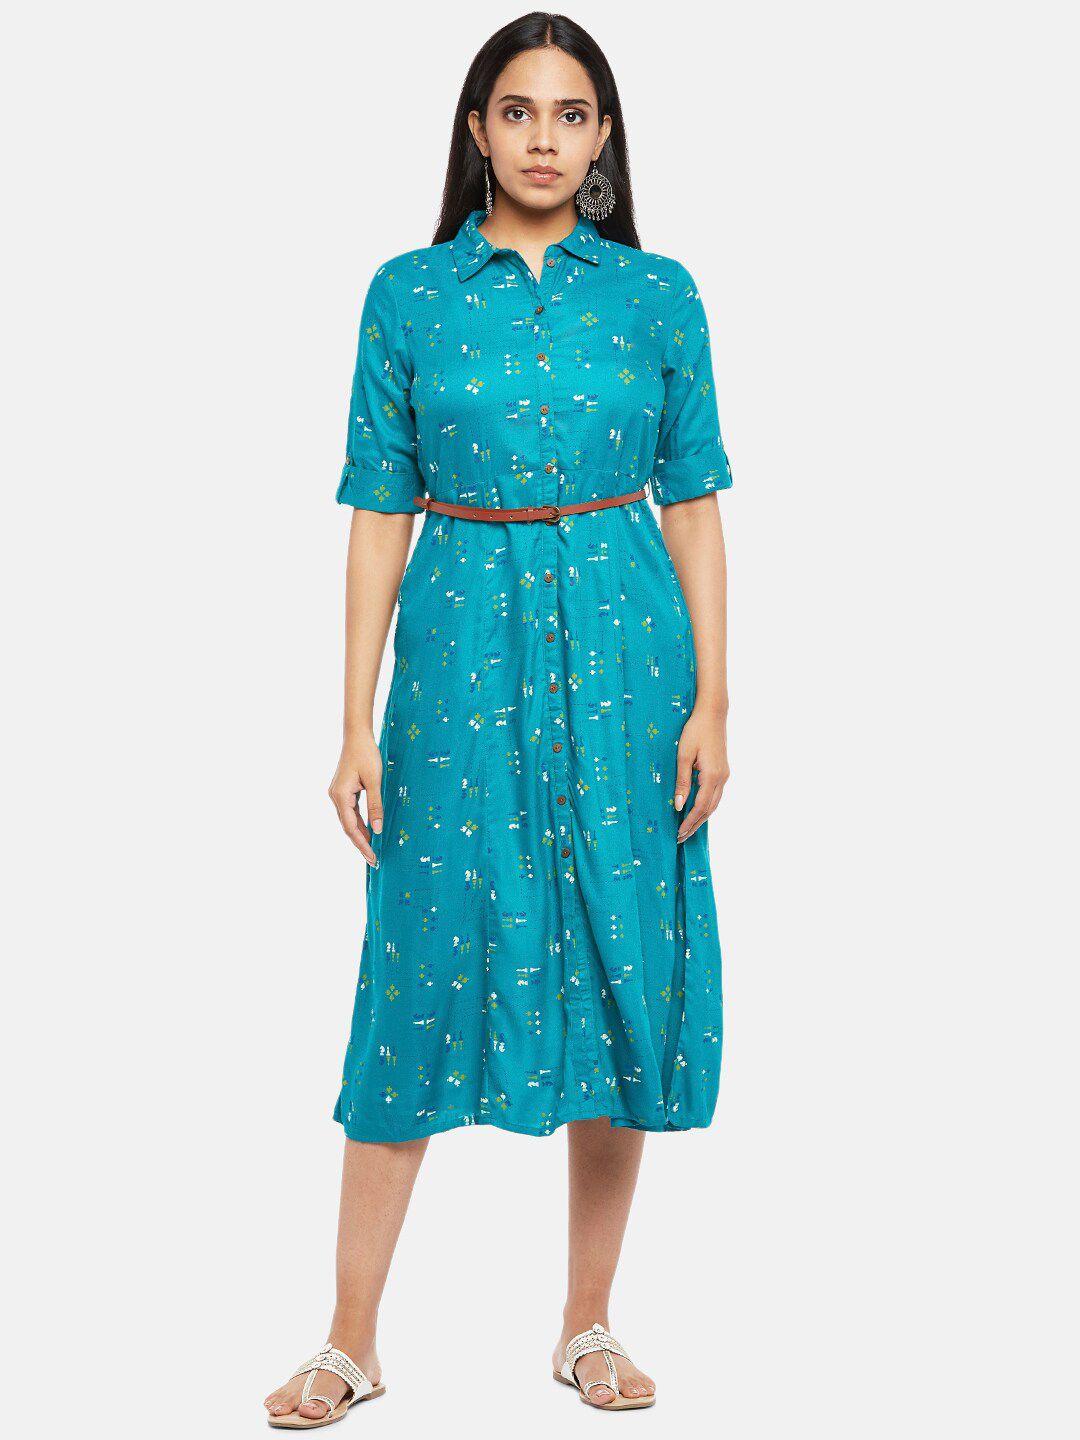 akkriti-by-pantaloons-women-turquoise-blue-&-yellow-ethnic-motifs-printed-shirt-dress